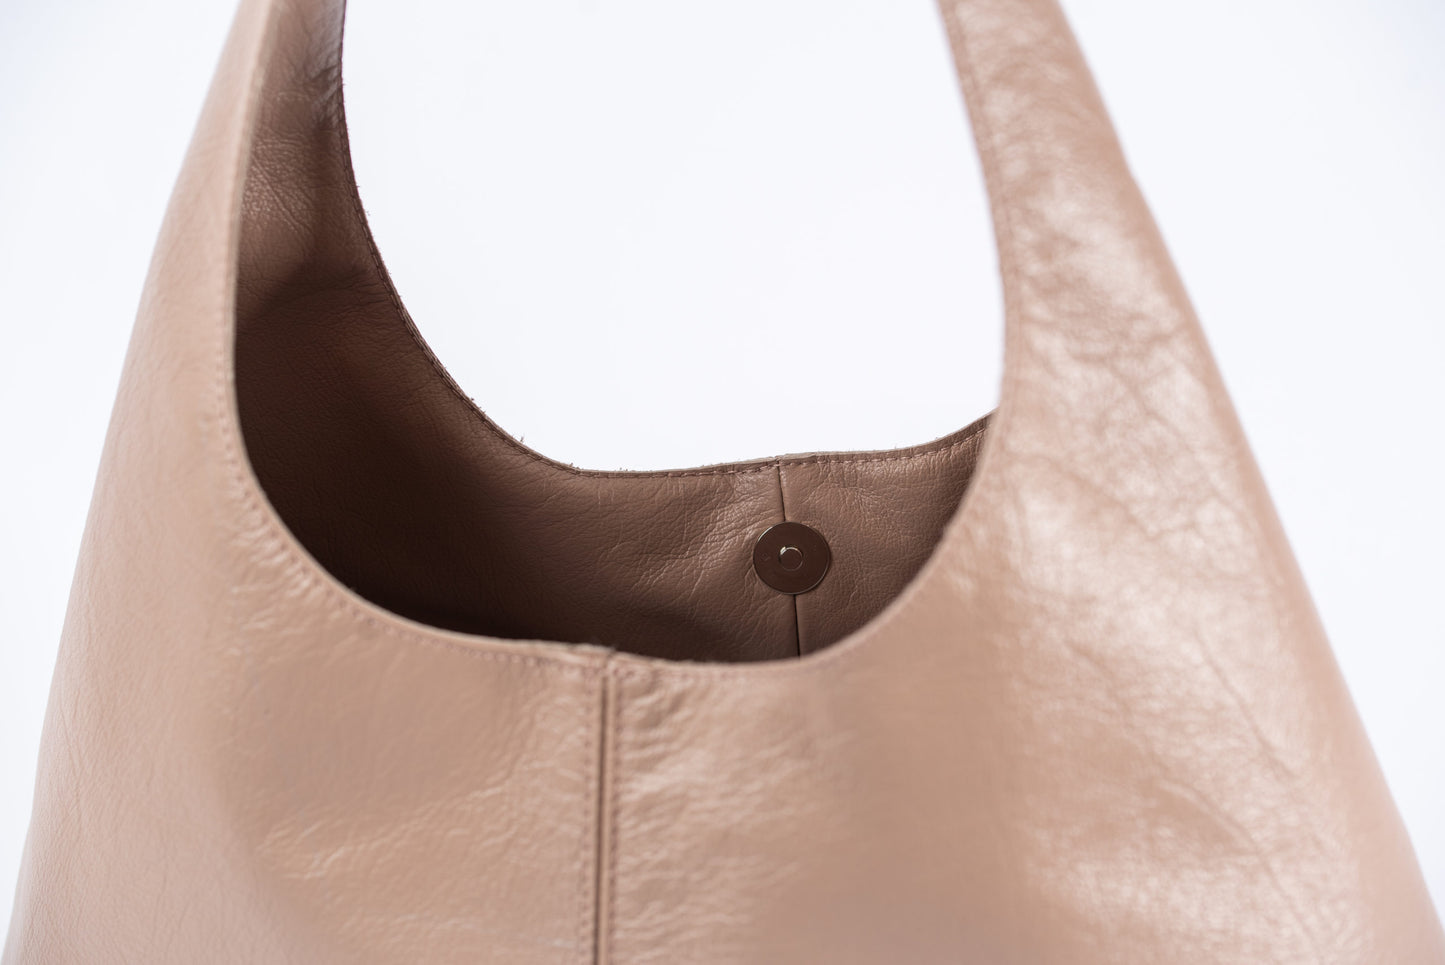 Hibiscus Leather Hobo Bag